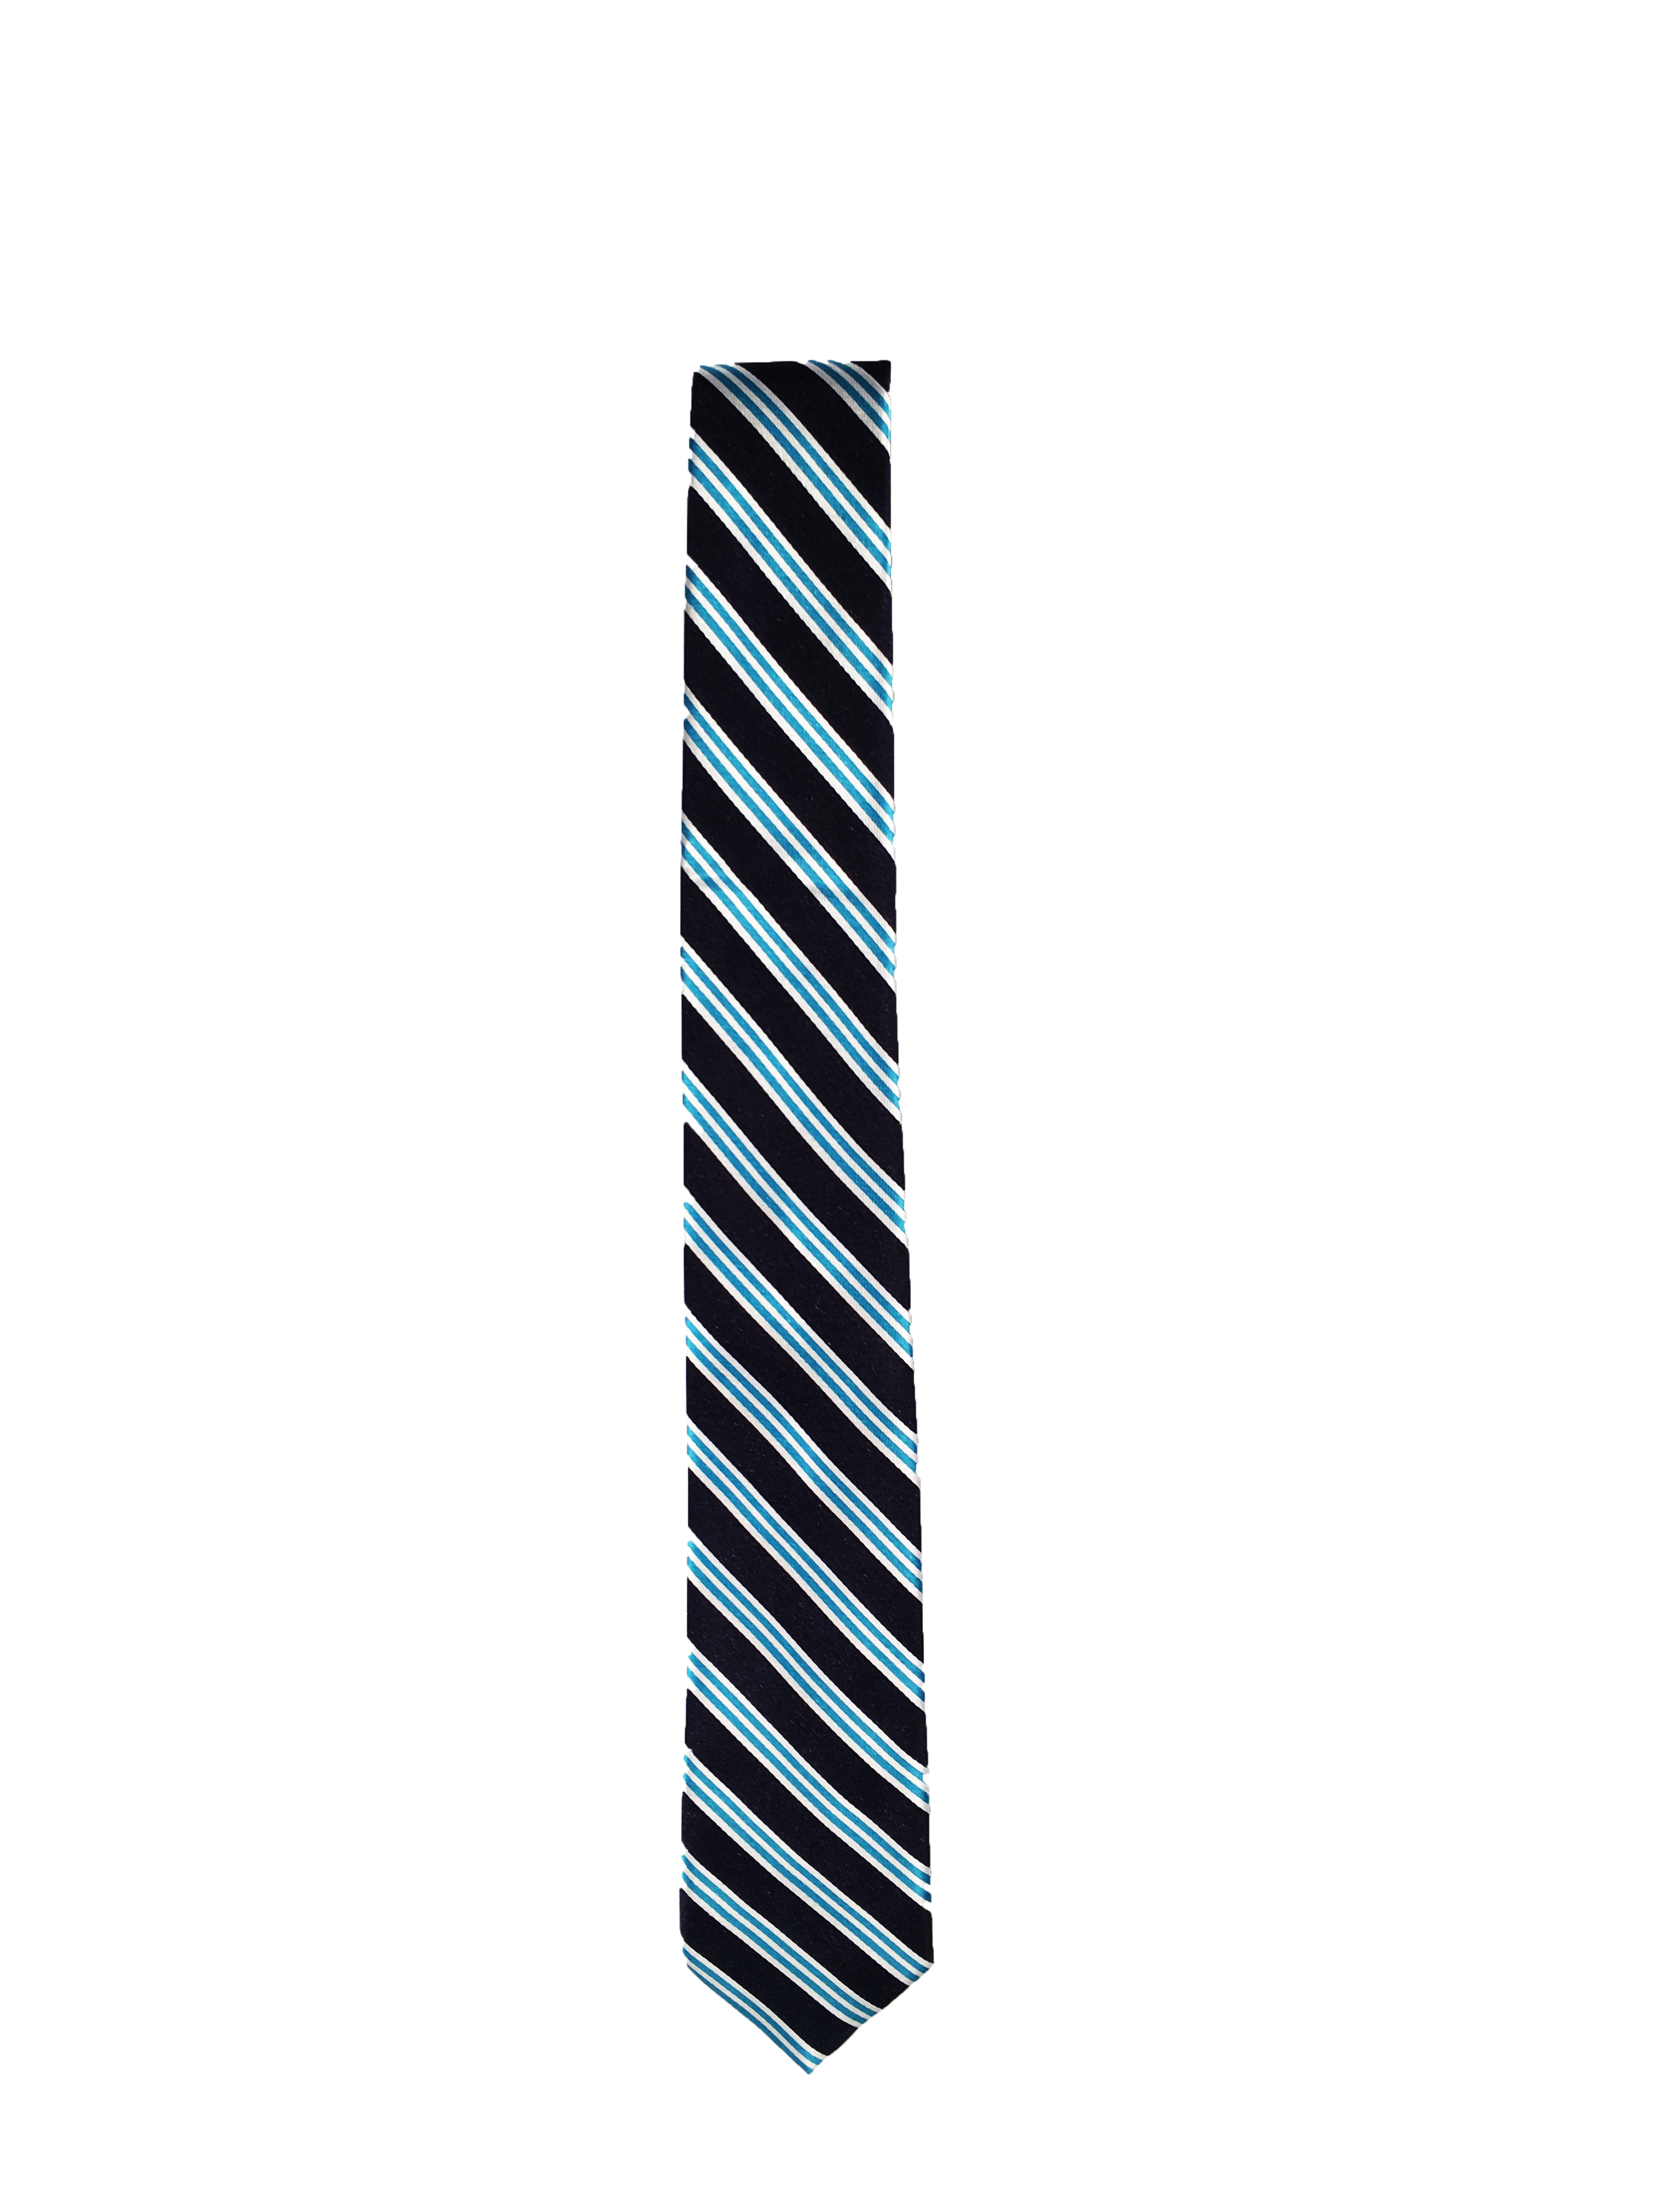 Kelmscott School Tie